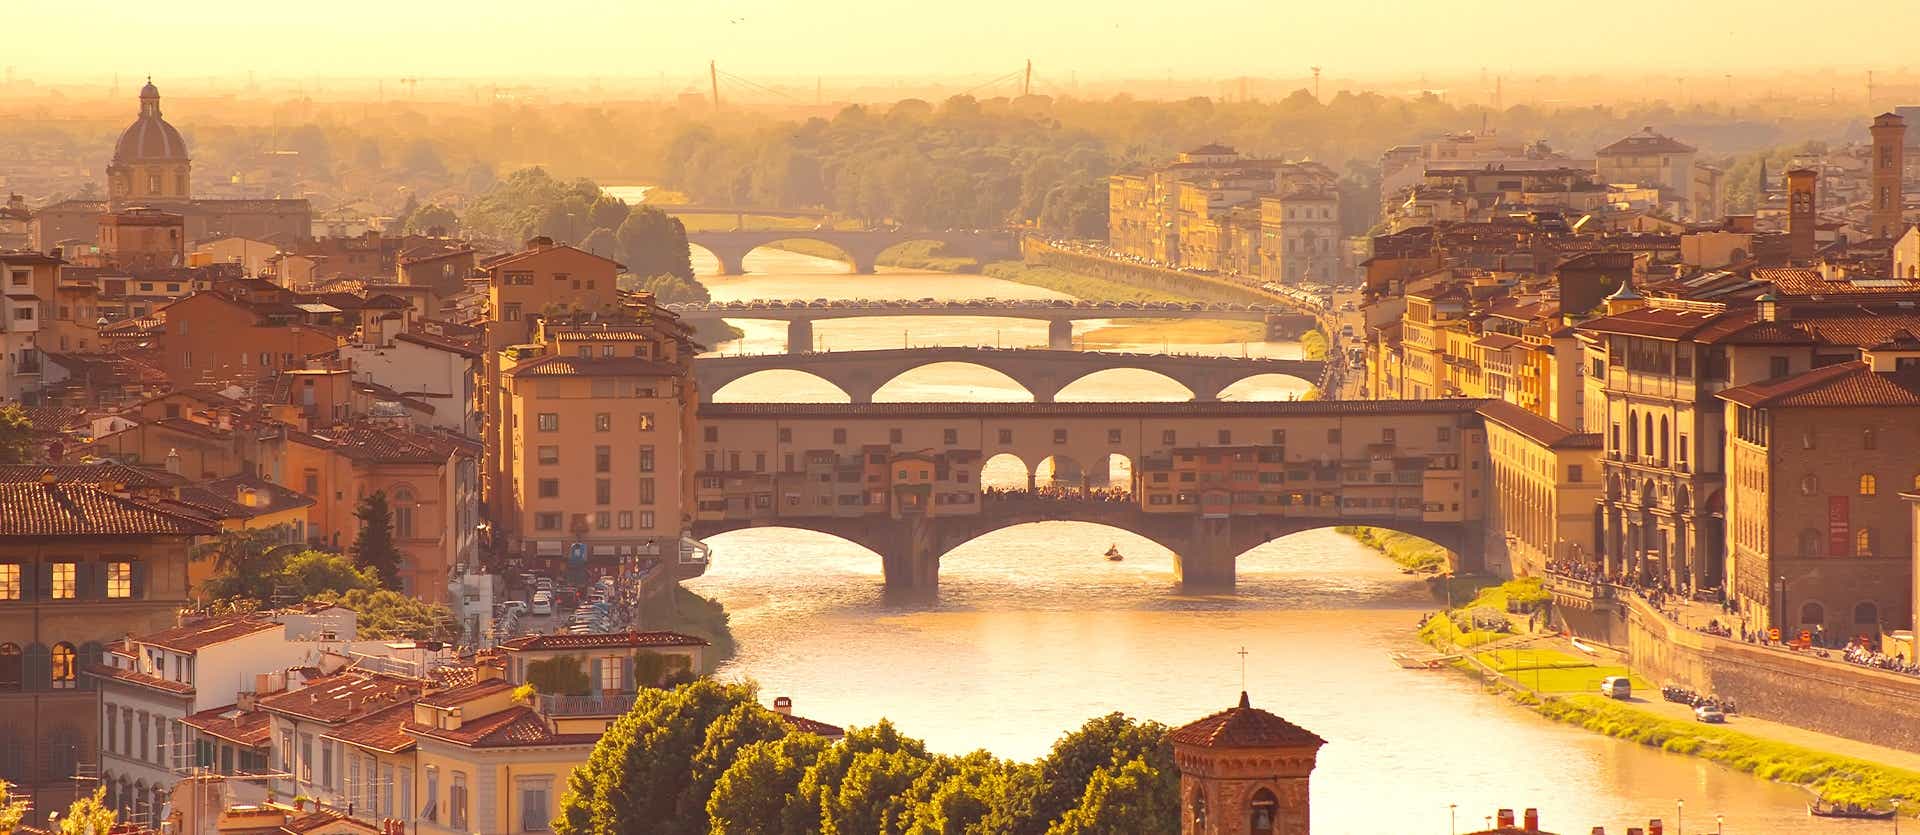 Ponte Vecchio <span class="iconos separador"></span> Florence